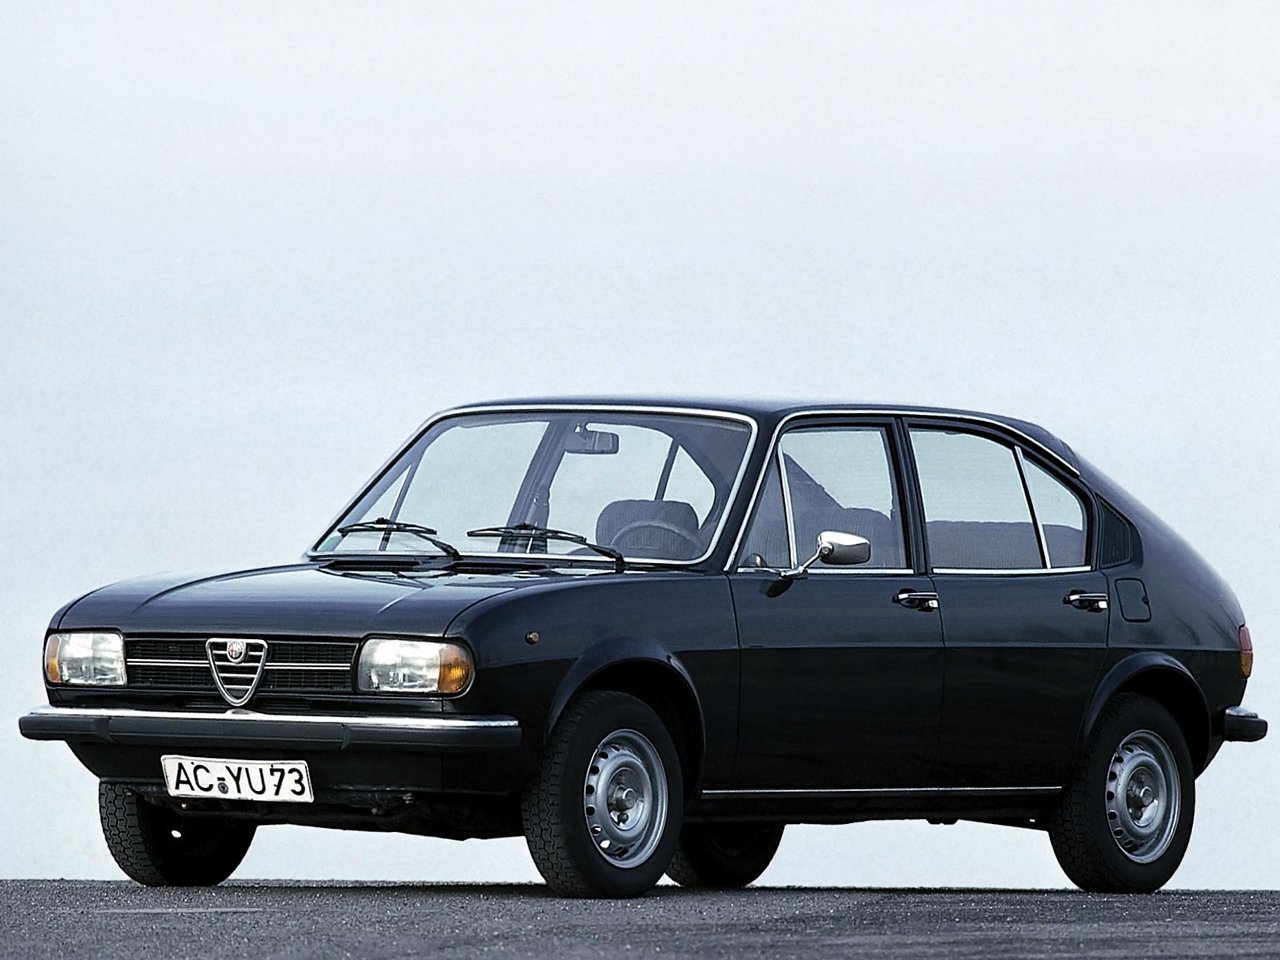 Расход газа одной комплектации хэтчбека пять дверей Alfa Romeo Alfasud. Разница стоимости заправки газом и бензином. Автономный пробег до и после установки ГБО.